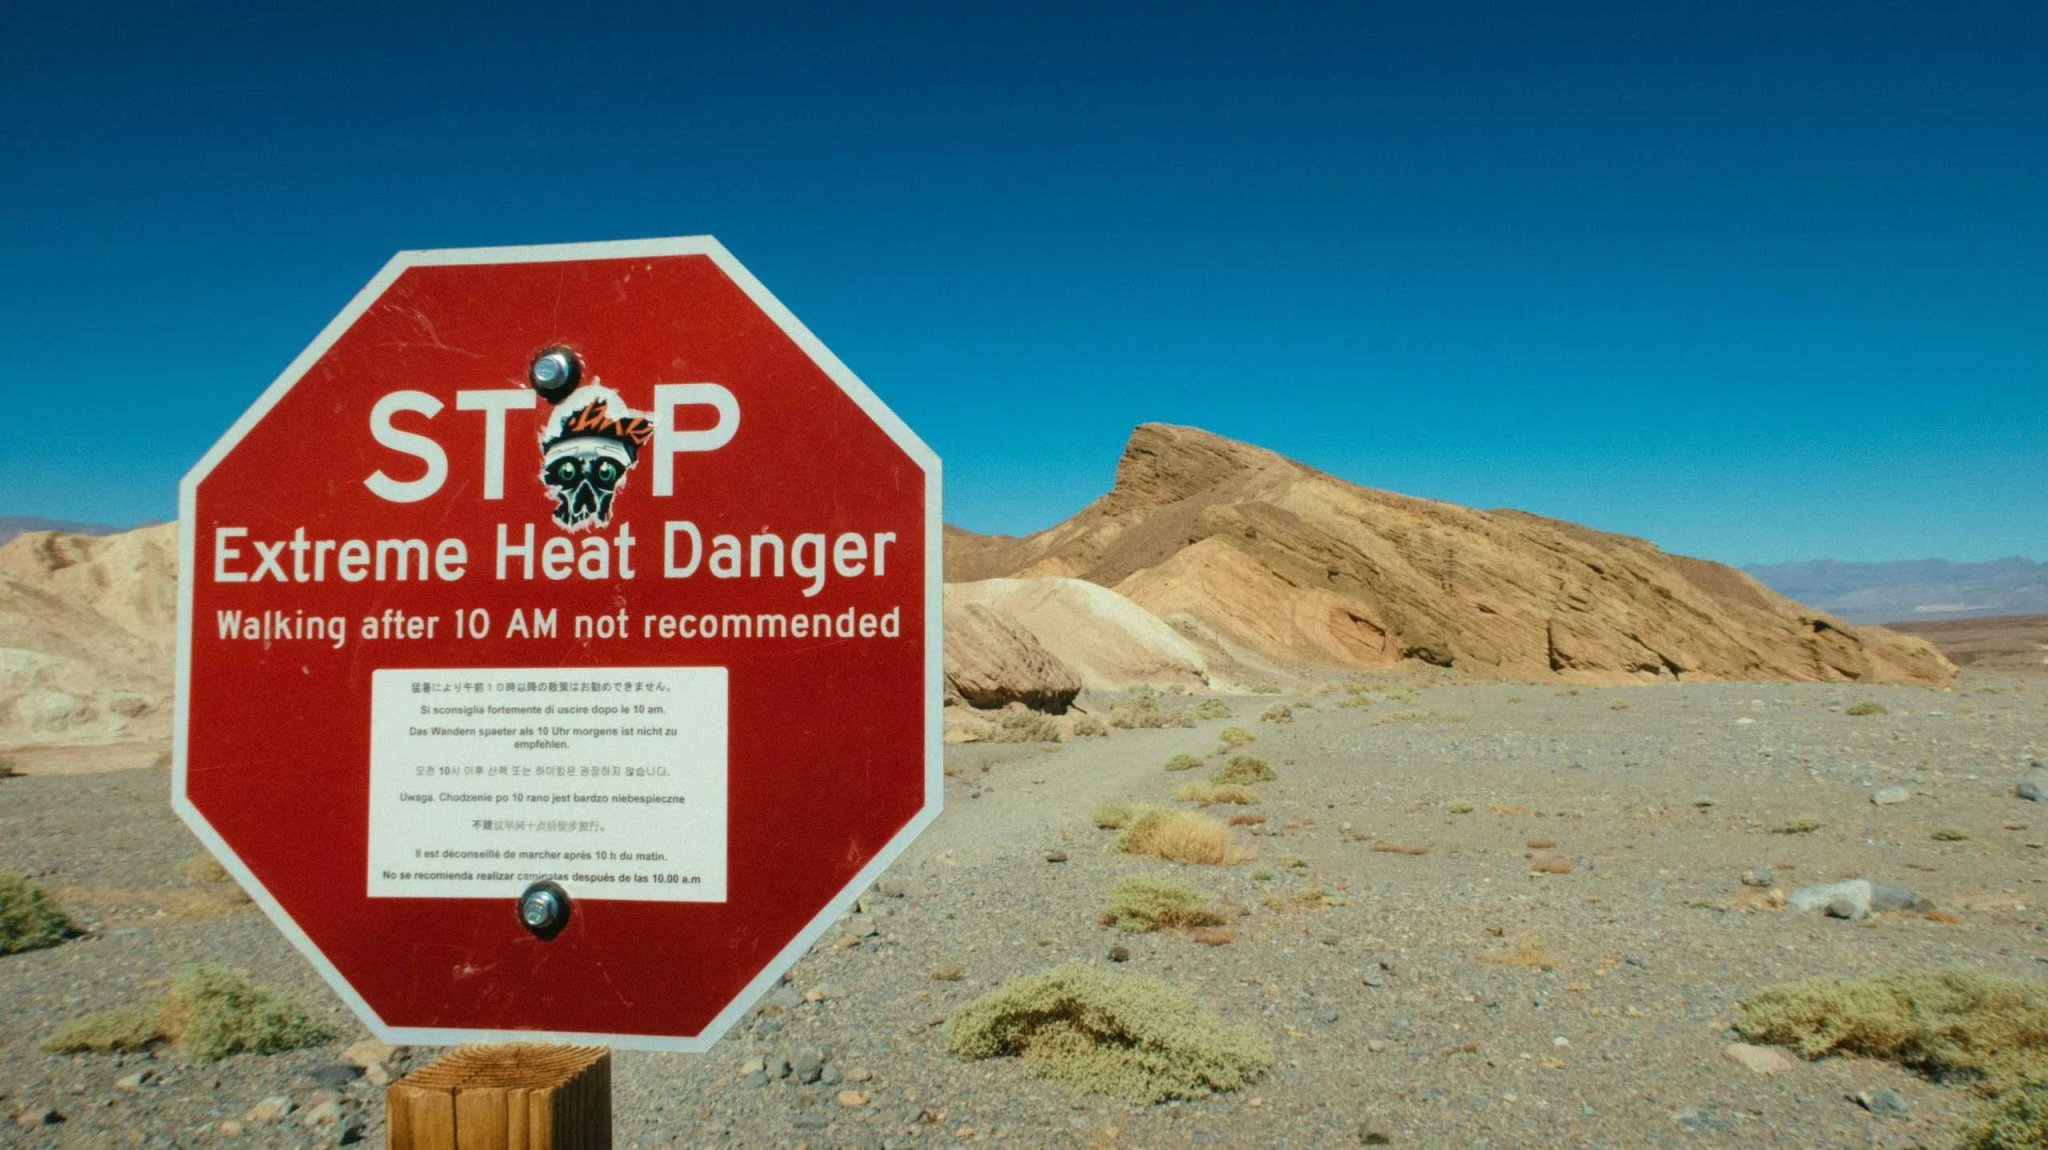 El calor será muy peligroso para más de la mitad de la población mundial en 2050